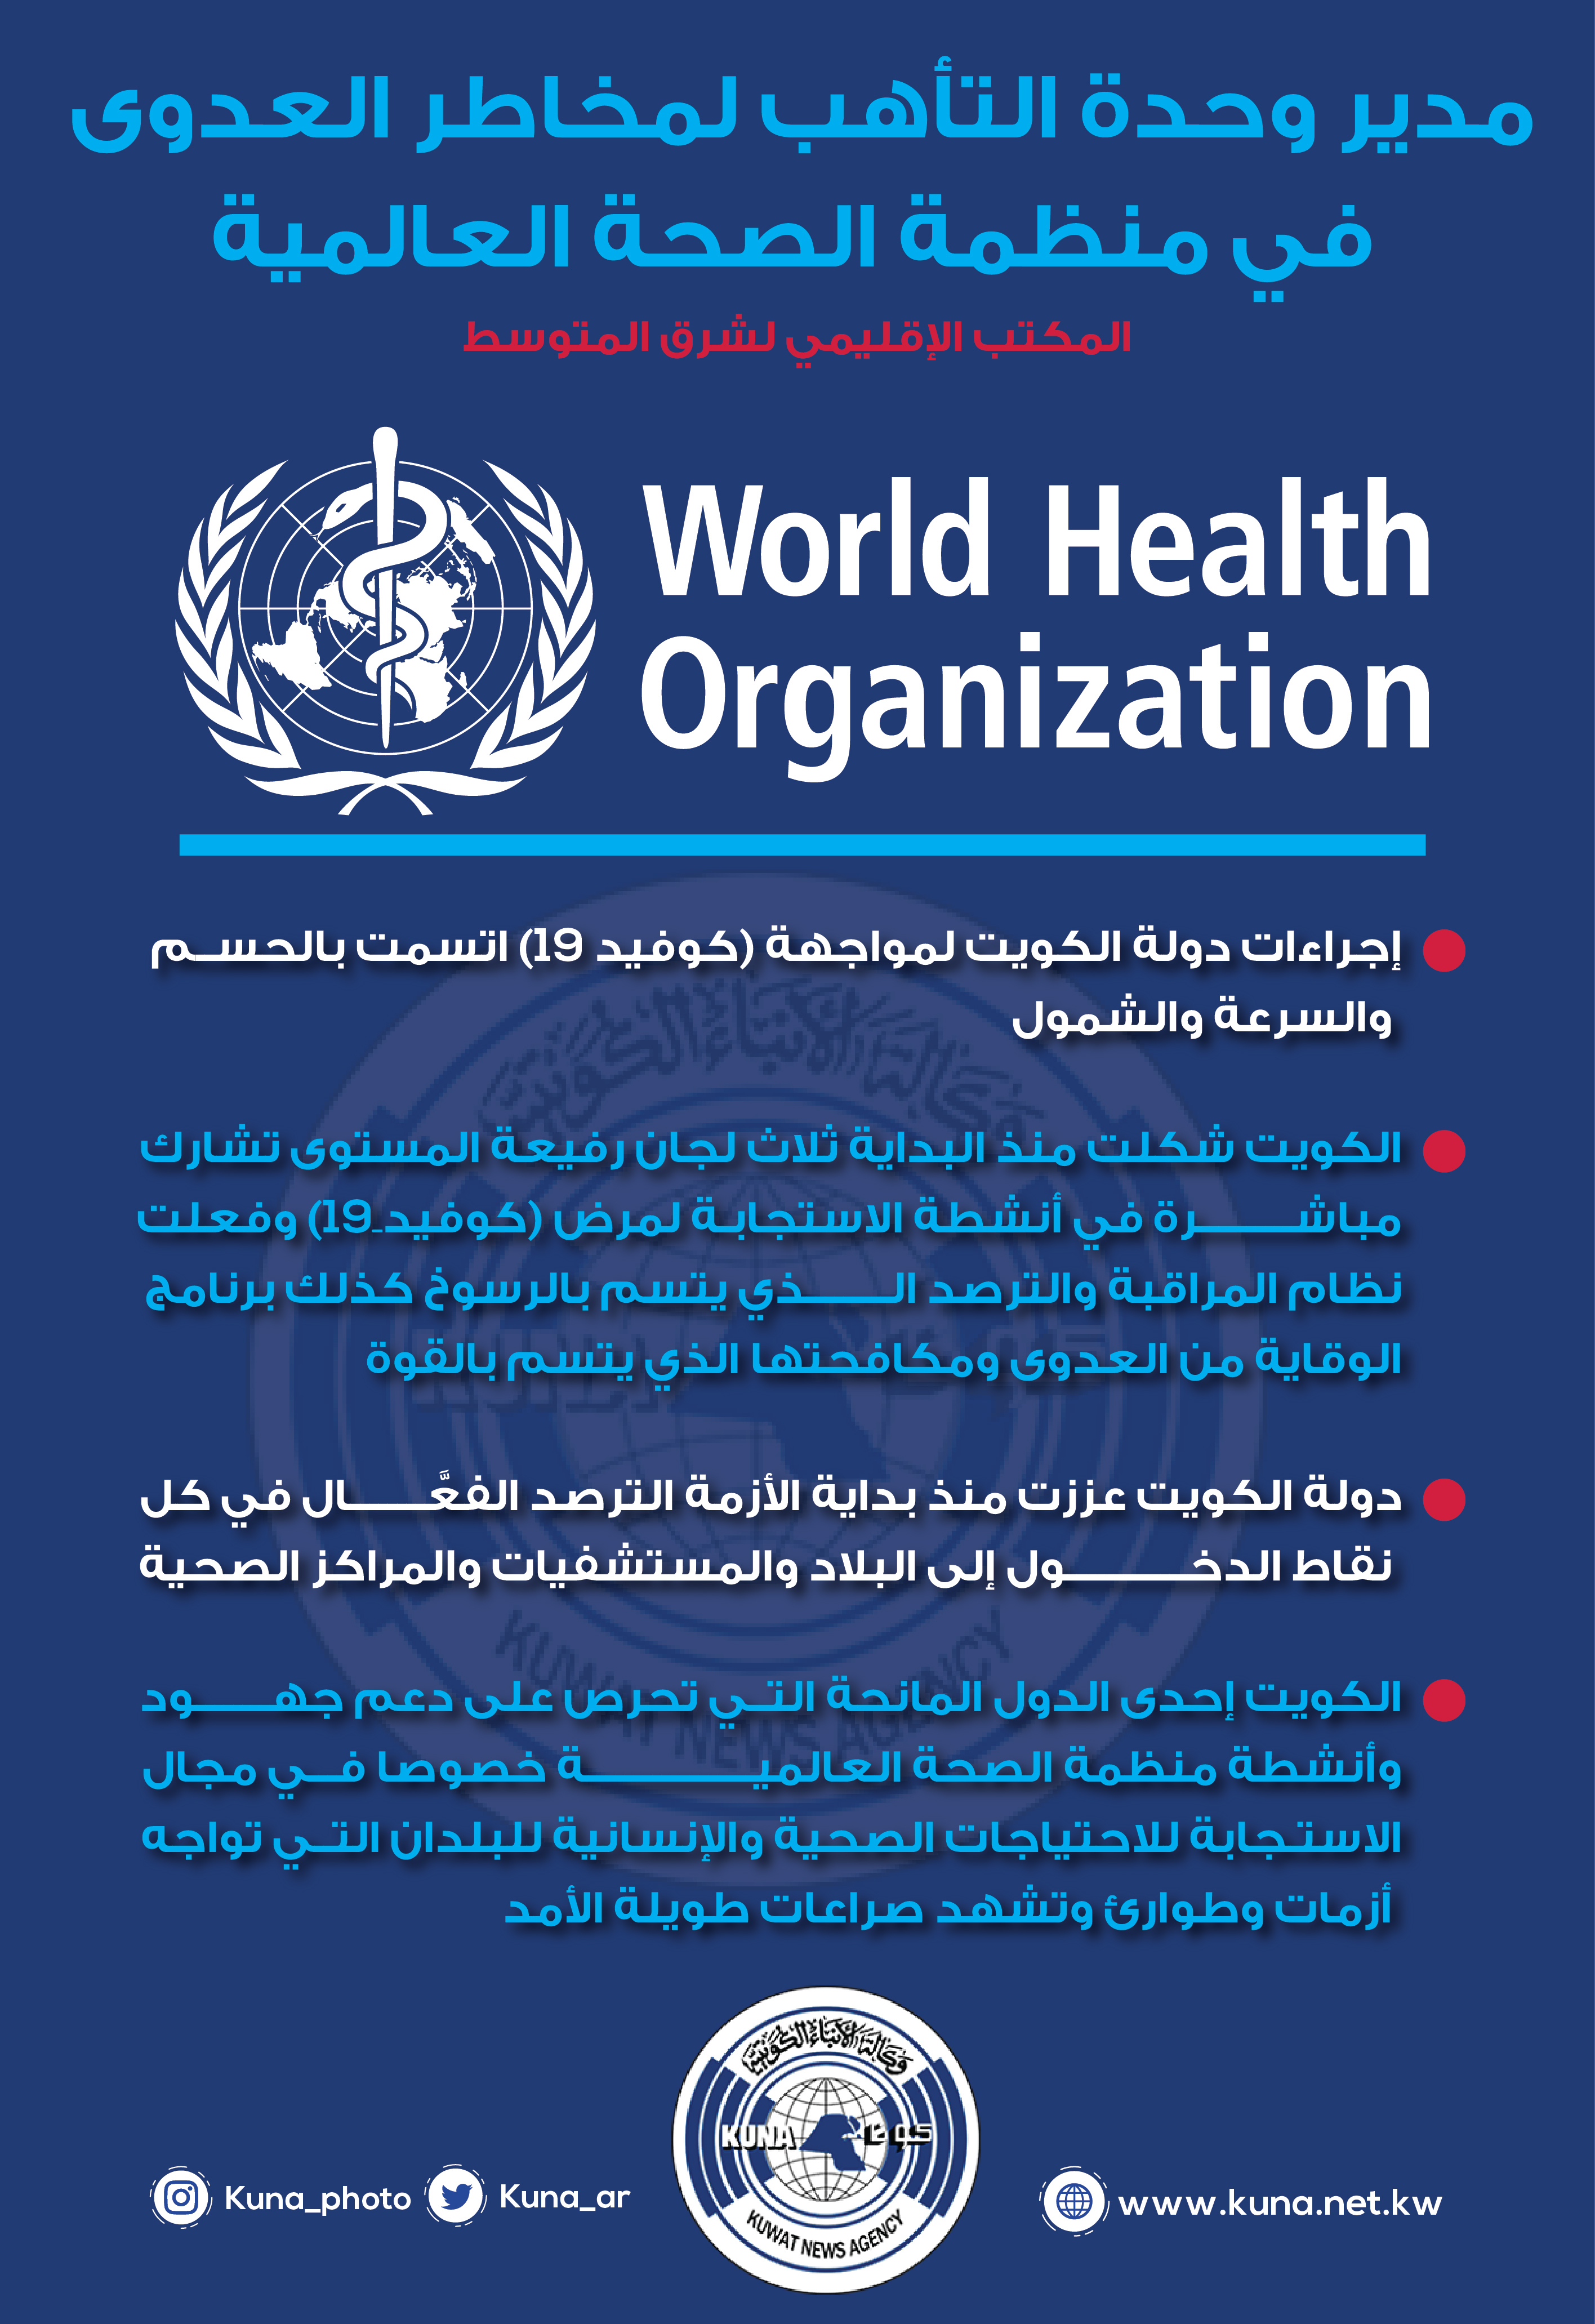 مسؤول ب(الصحة العالمية): إجراءات دولة الكويت لمواجهة (كوفيد-19) اتسمت بالحسم والسرعة والشمول